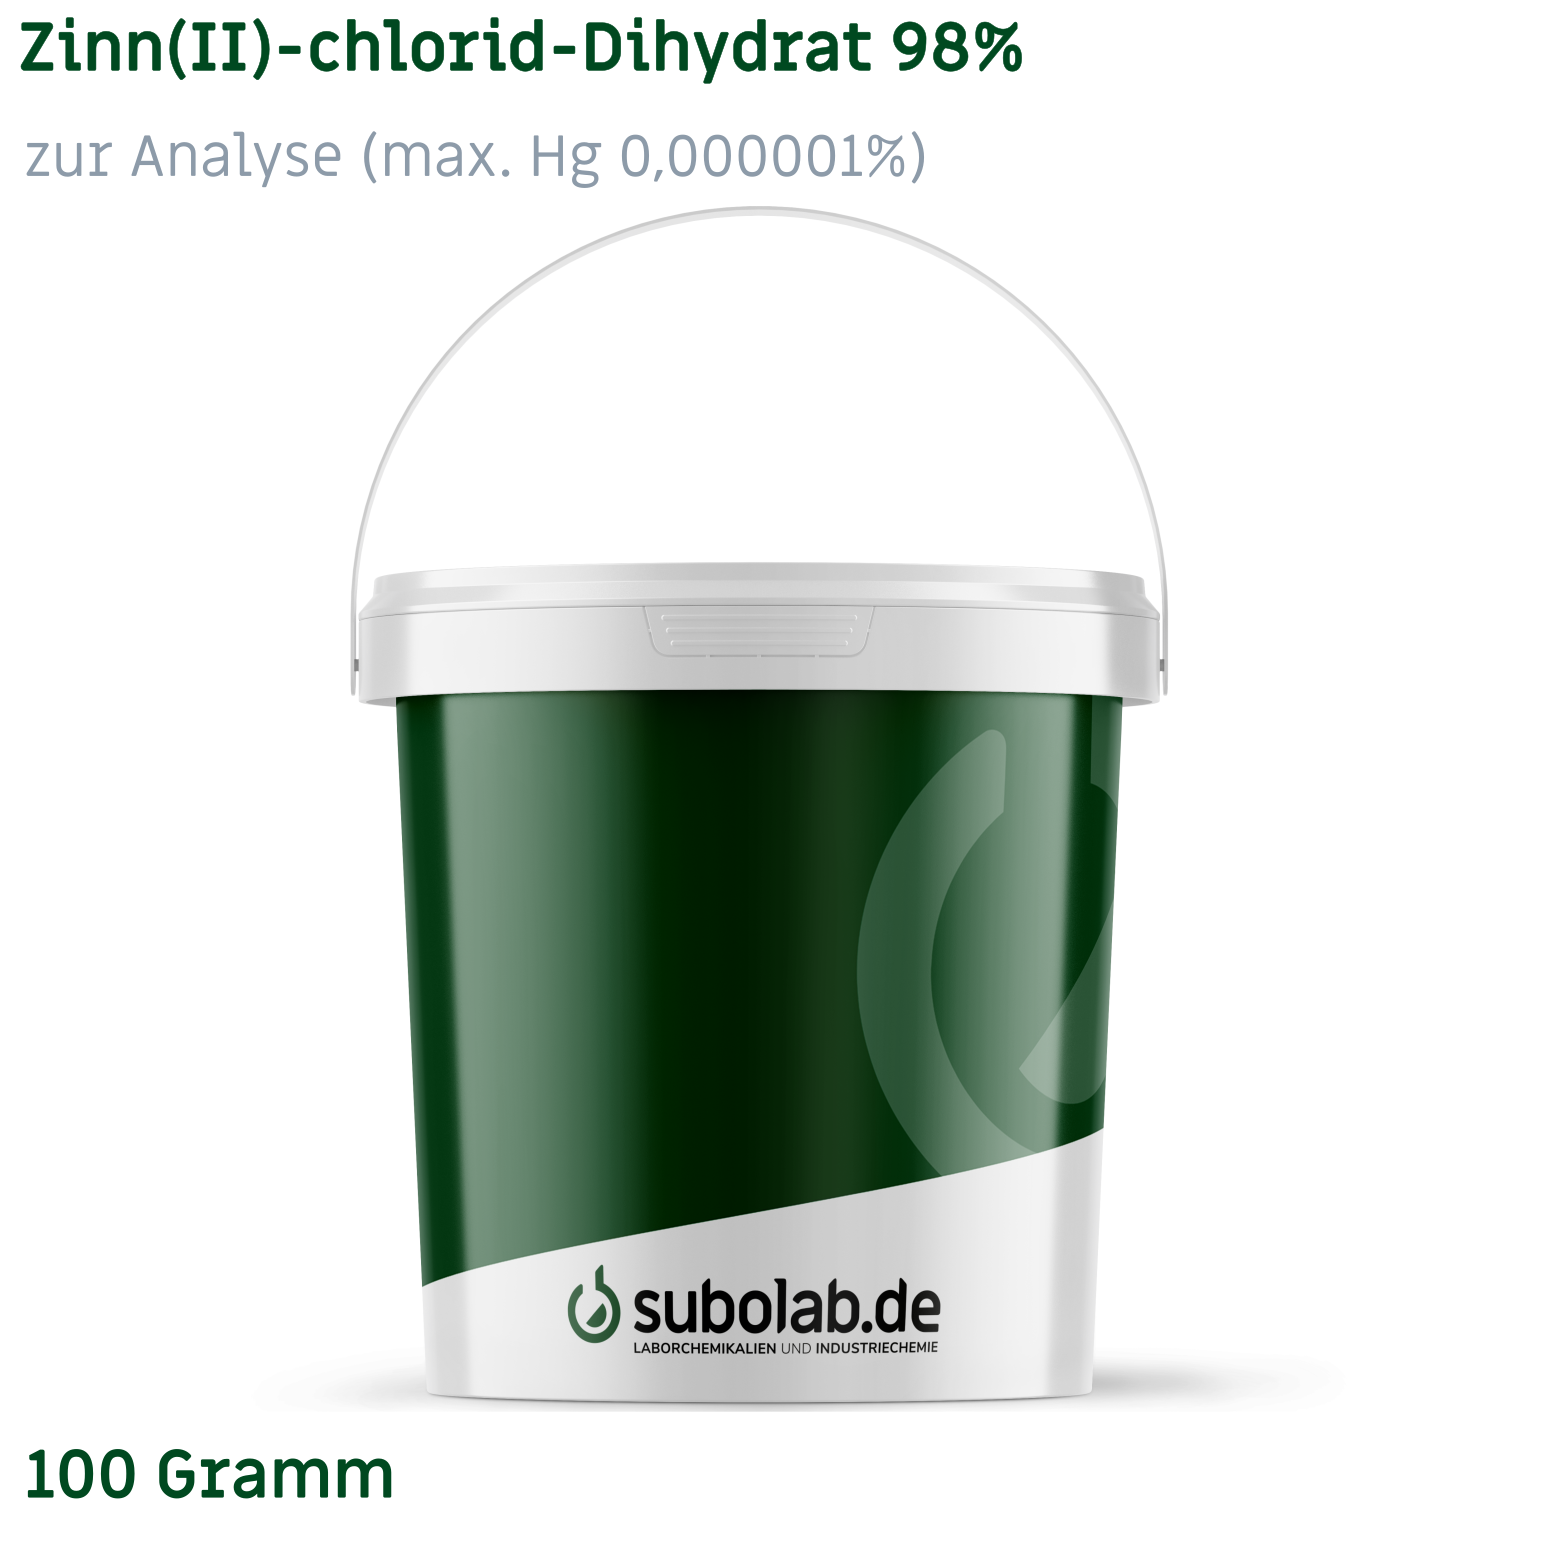 Bild von Zinn(II)-chlorid - Dihydrat 98% zur Analyse (max. Hg 0,000001%) (100 Gramm)